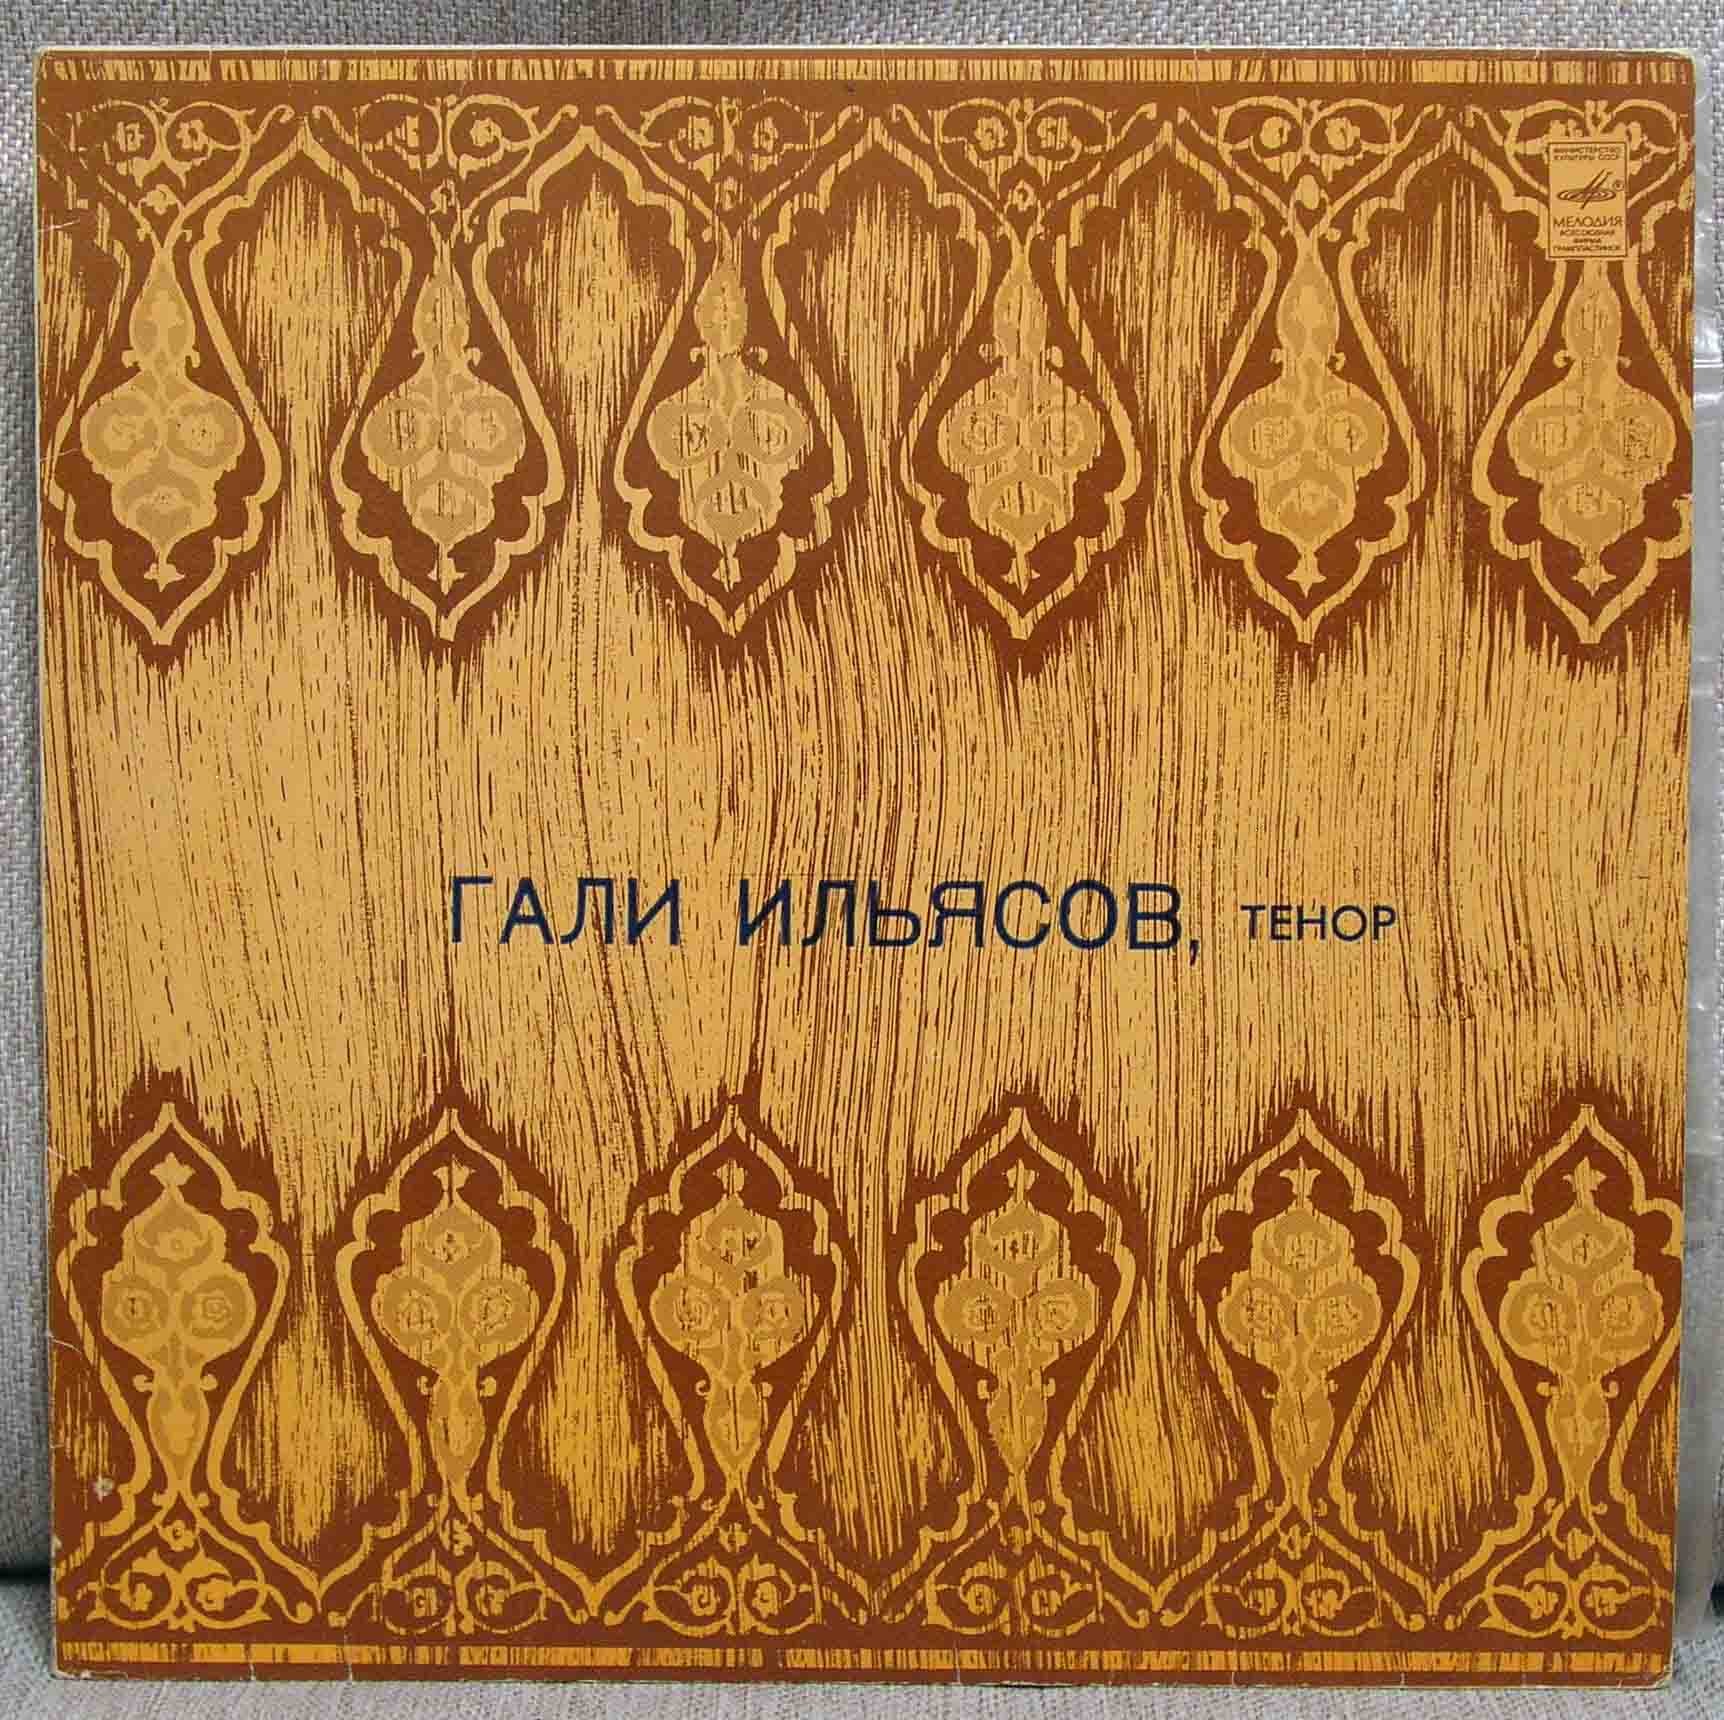 Гали ИЛЬЯСОВ (тенор): «Песни татарских композиторов»